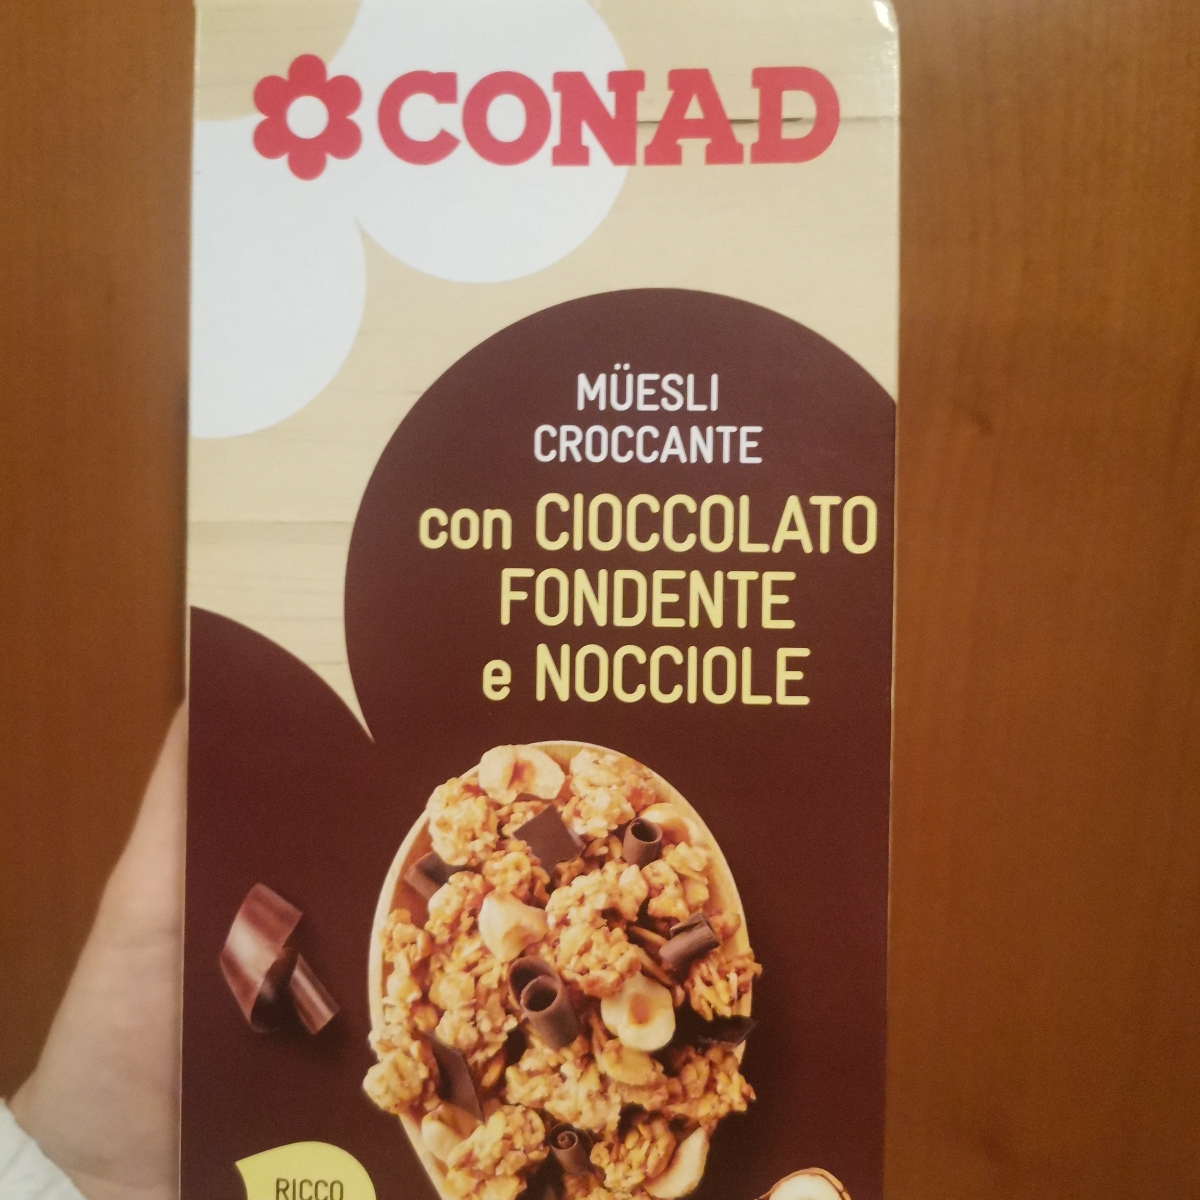 Conad Müesli Croccante con Cioccolato Fondente e Nocciole Reviews | abillion